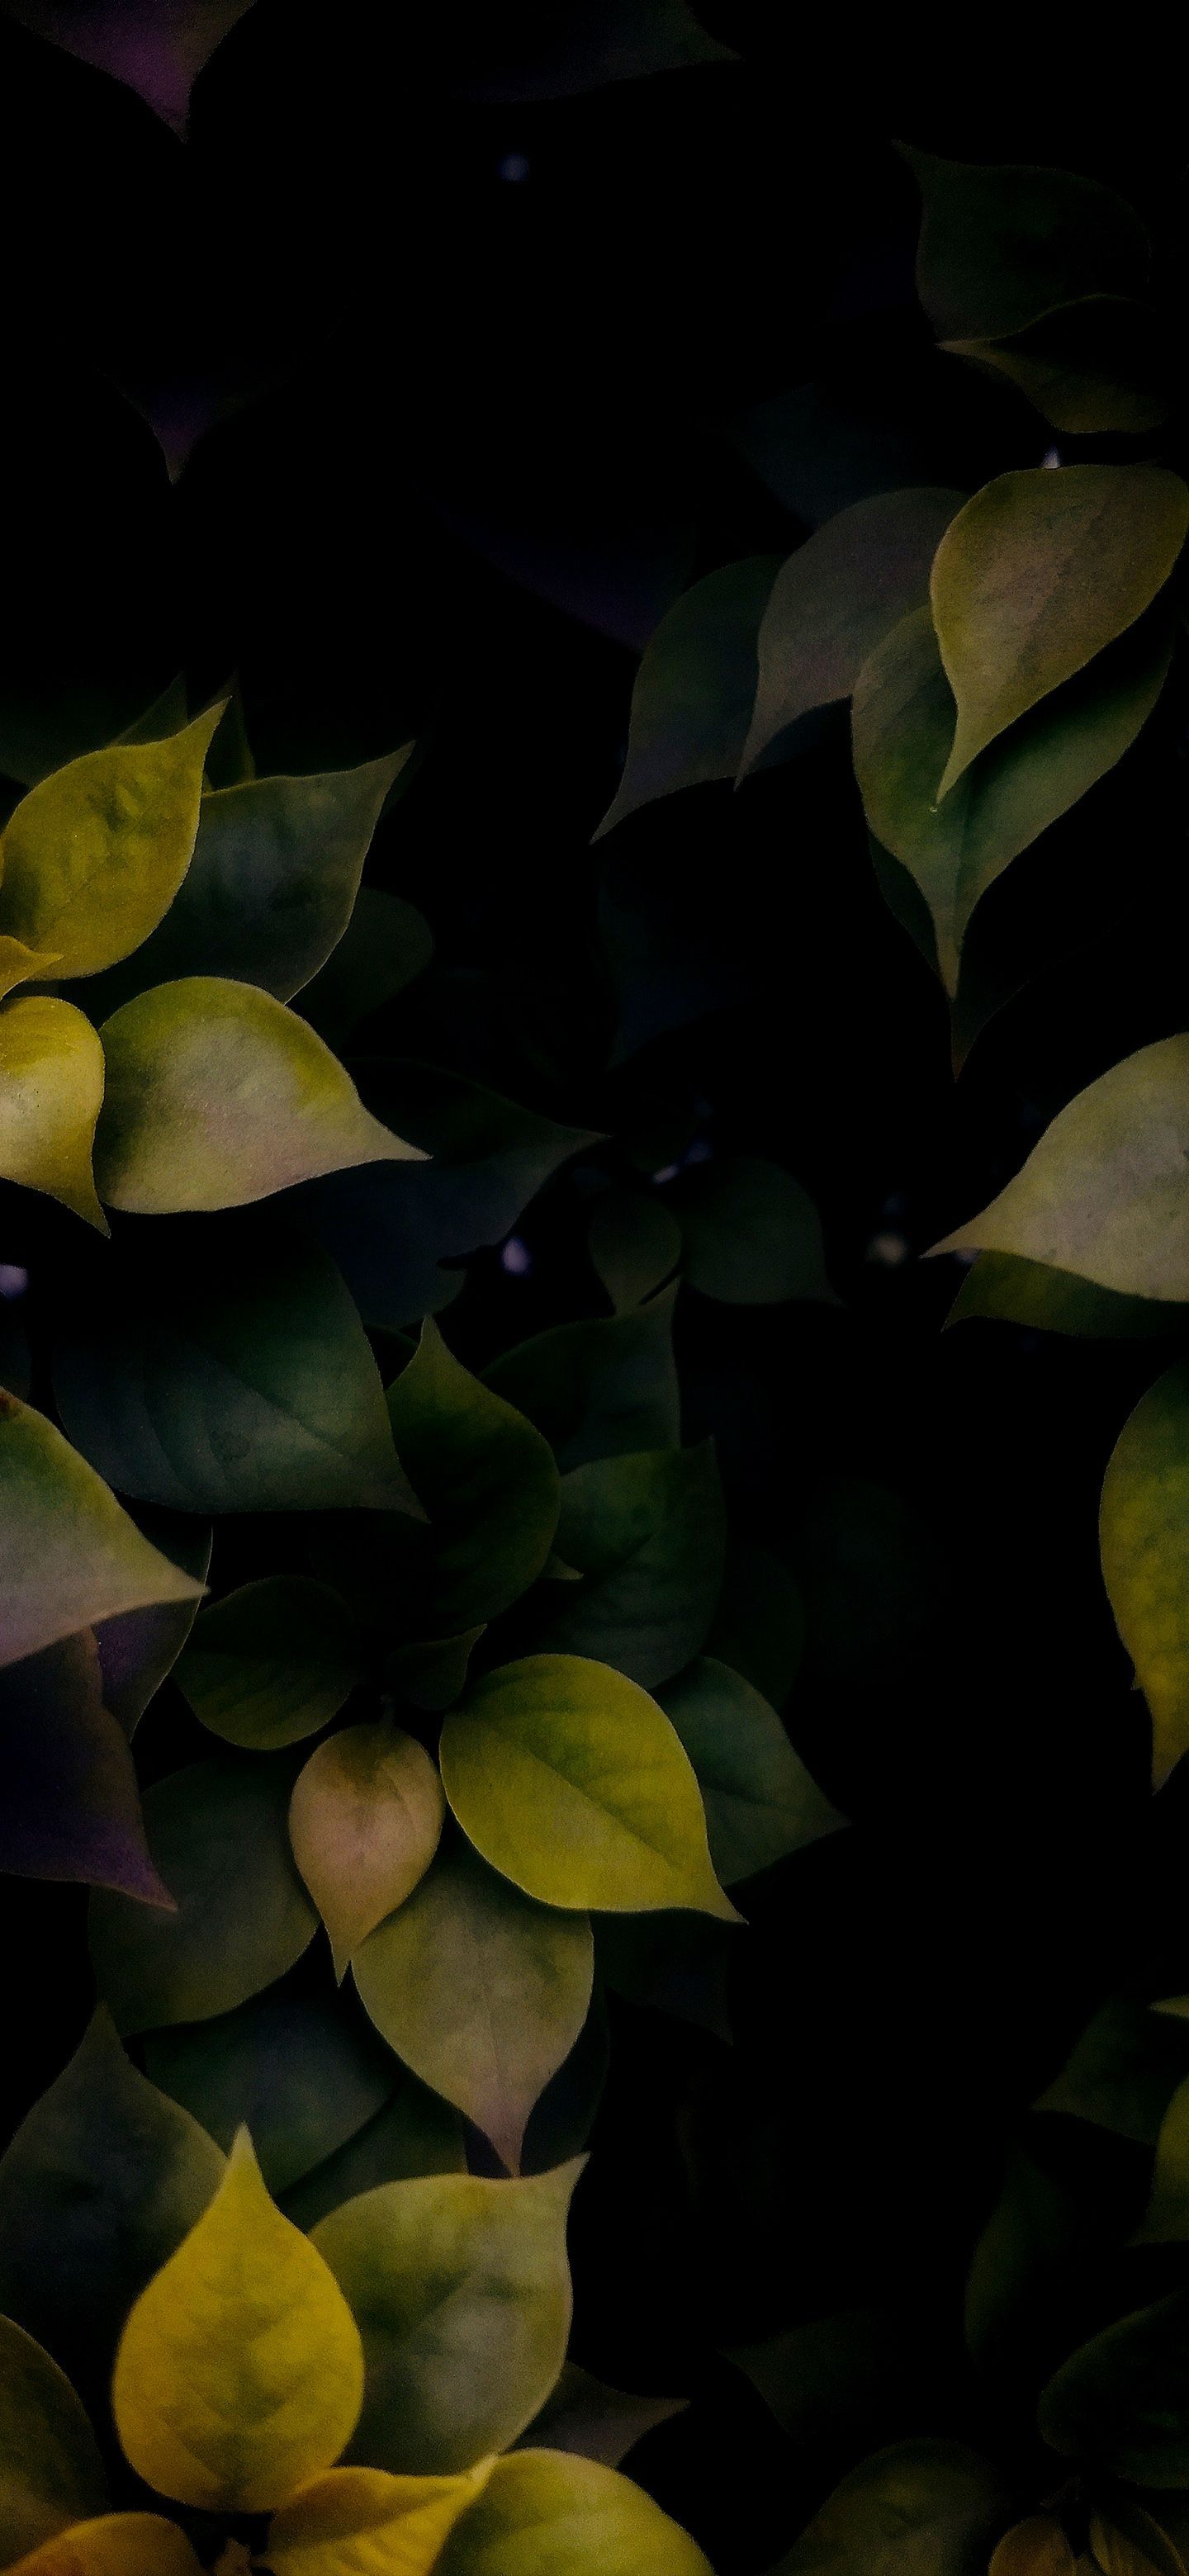 Leaves in Dark. Ipod wallpaper .in.com